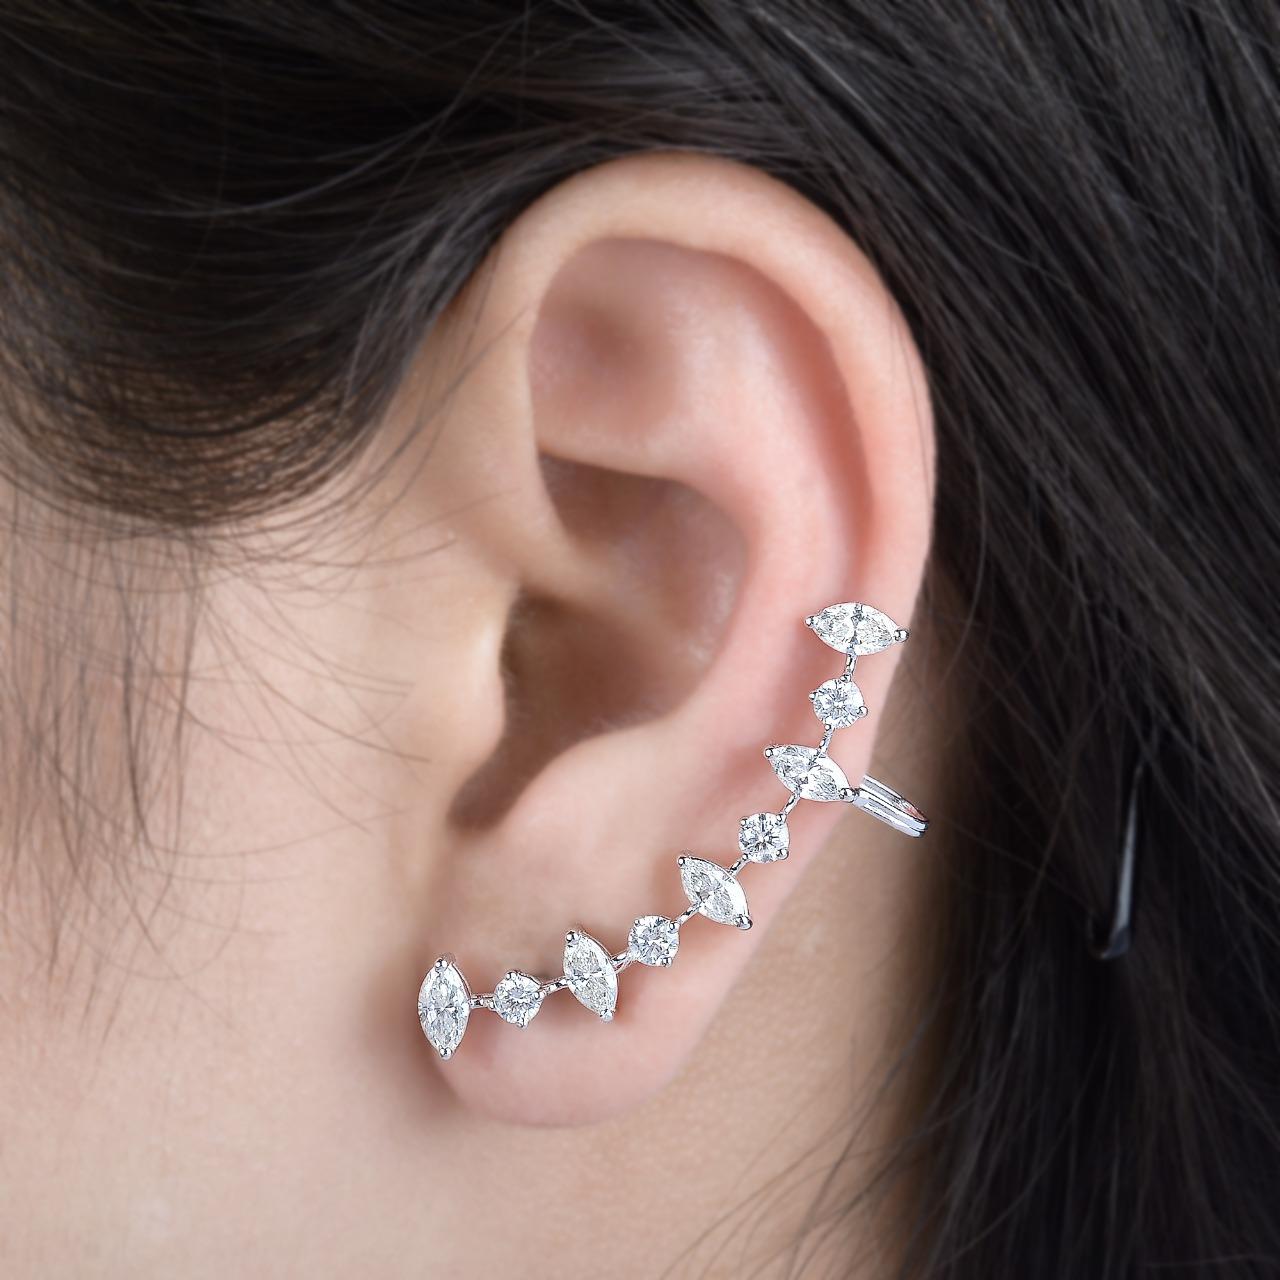 Diese Ohrringe sind aus 14-karätigem Gold handgefertigt und mit 1,70 Karat Diamanten verziert. Zeigen Sie ihren einzigartigen Stil, indem Sie Ihr Haar nach hinten schwingen.

FOLLOW  MEGHNA JEWELS Storefront, um die neueste Kollektion und exklusive